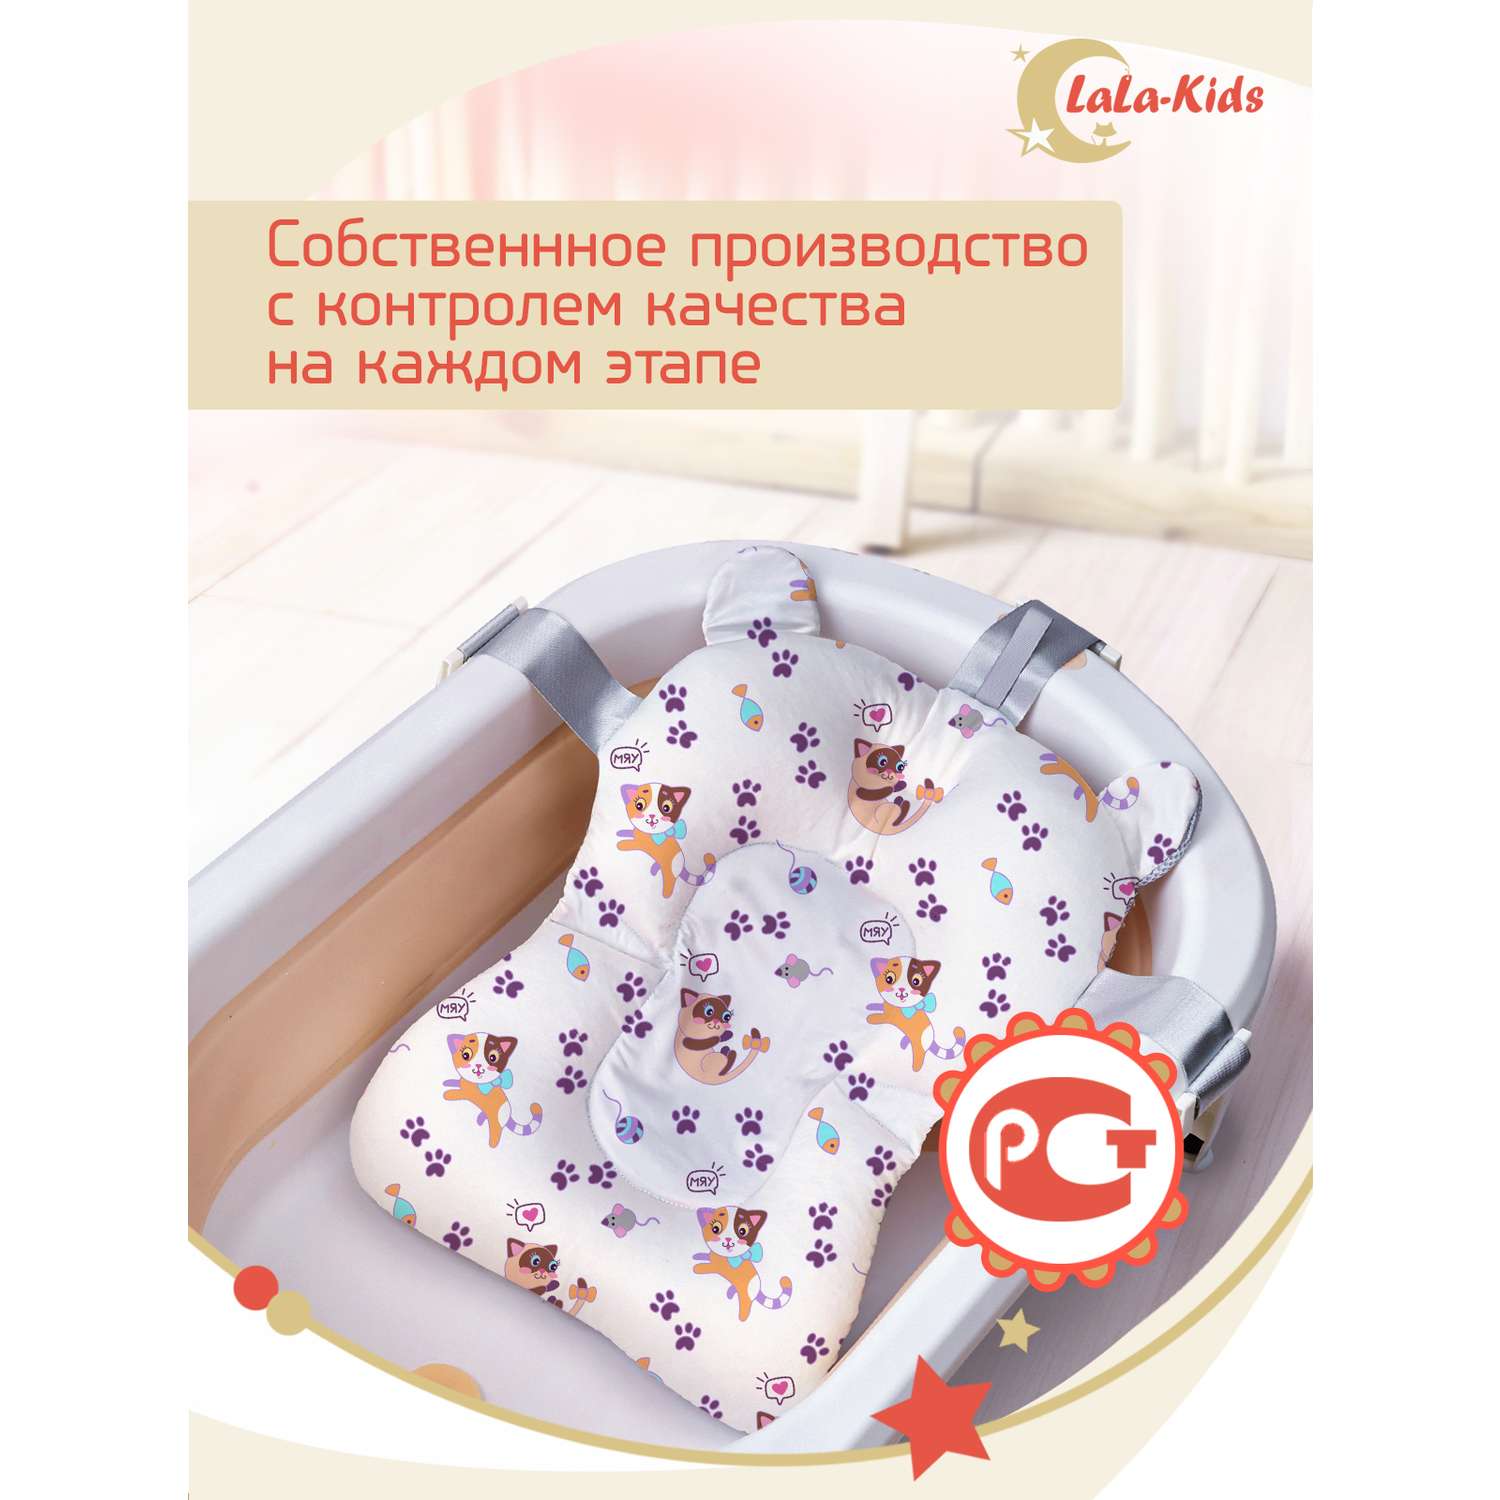 Детская ванночка с термометром LaLa-Kids складная для купания новорожденных с матрасиком в комплекте - фото 19